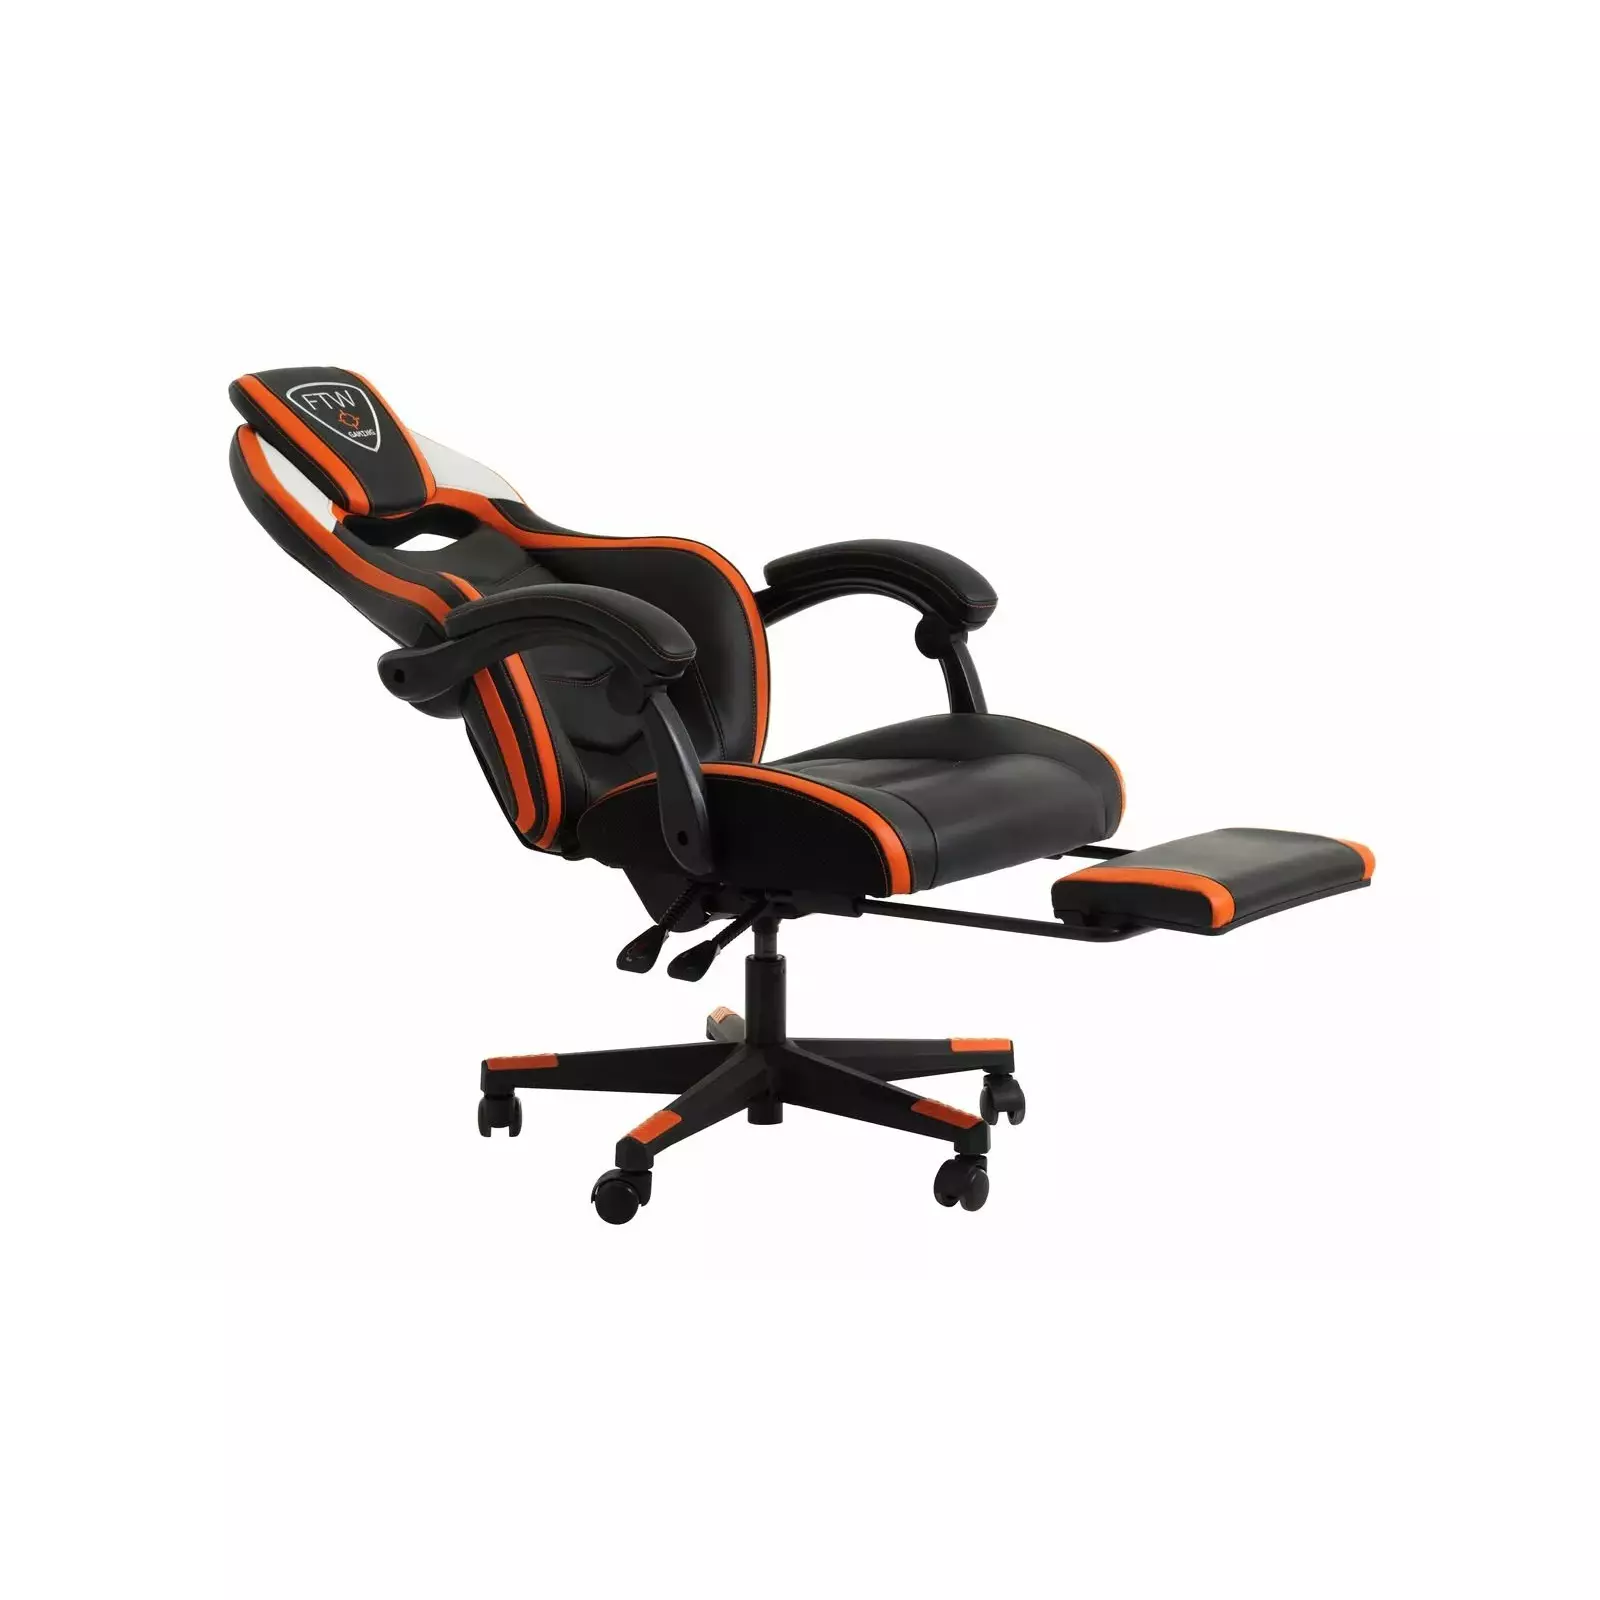 Массажное компьютерное кресло. Геймерское кресло Lamdrup. Игровое кресло оранжевое. JYSK Snertinge. FTW Gamborg.